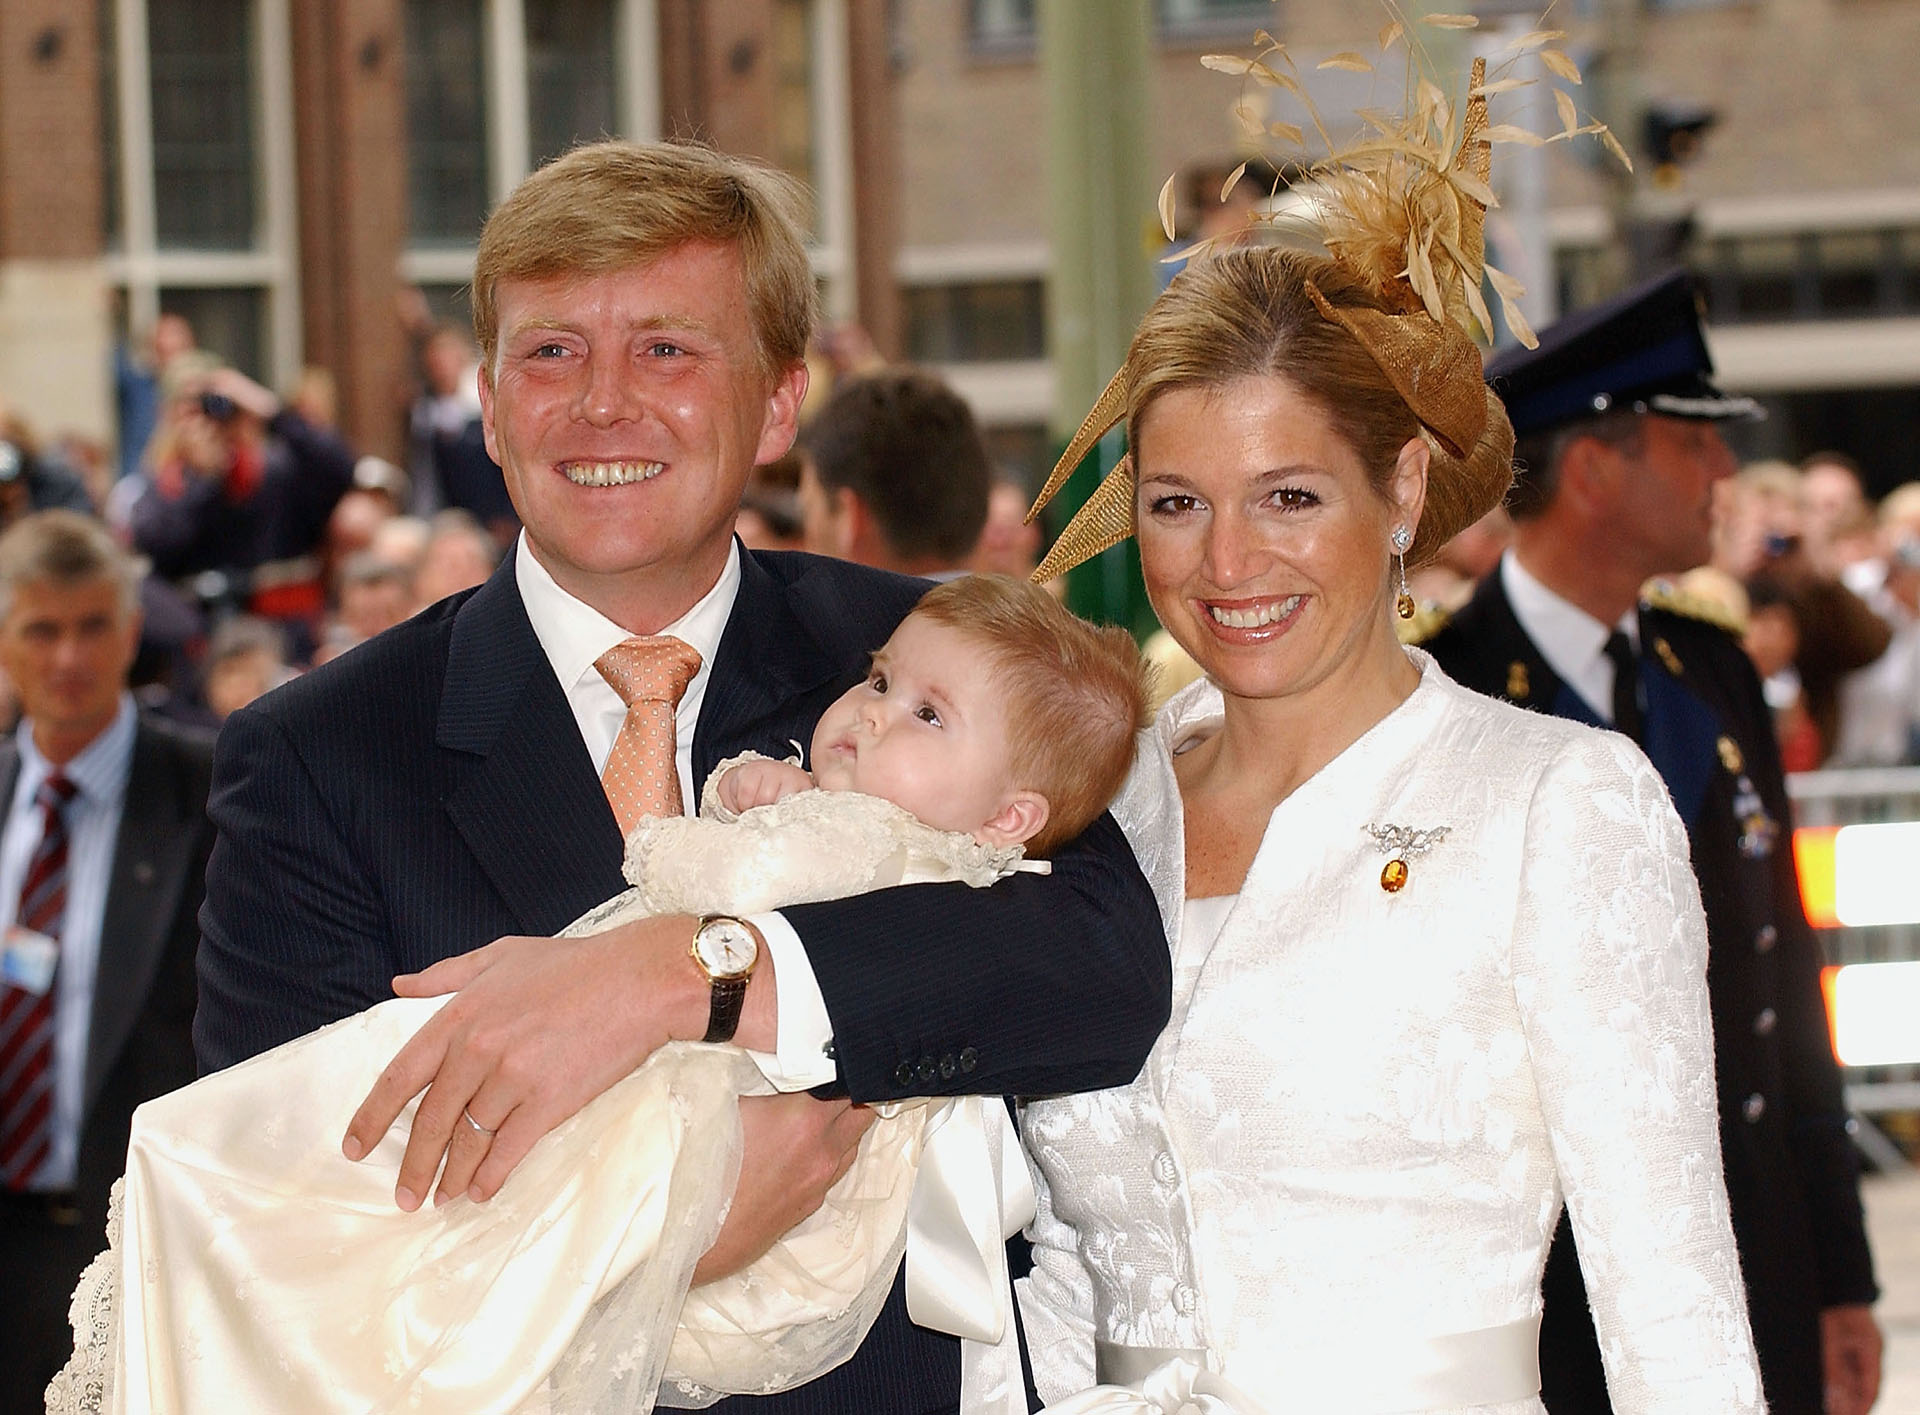 El 7 de diciembre de 2003, Máxima dio a luz a su hija mayor, la princesa Amalia, quien fue bautizada el 12 de junio de 2004 en La Haya, y quien es la heredera al trono de Holanda  